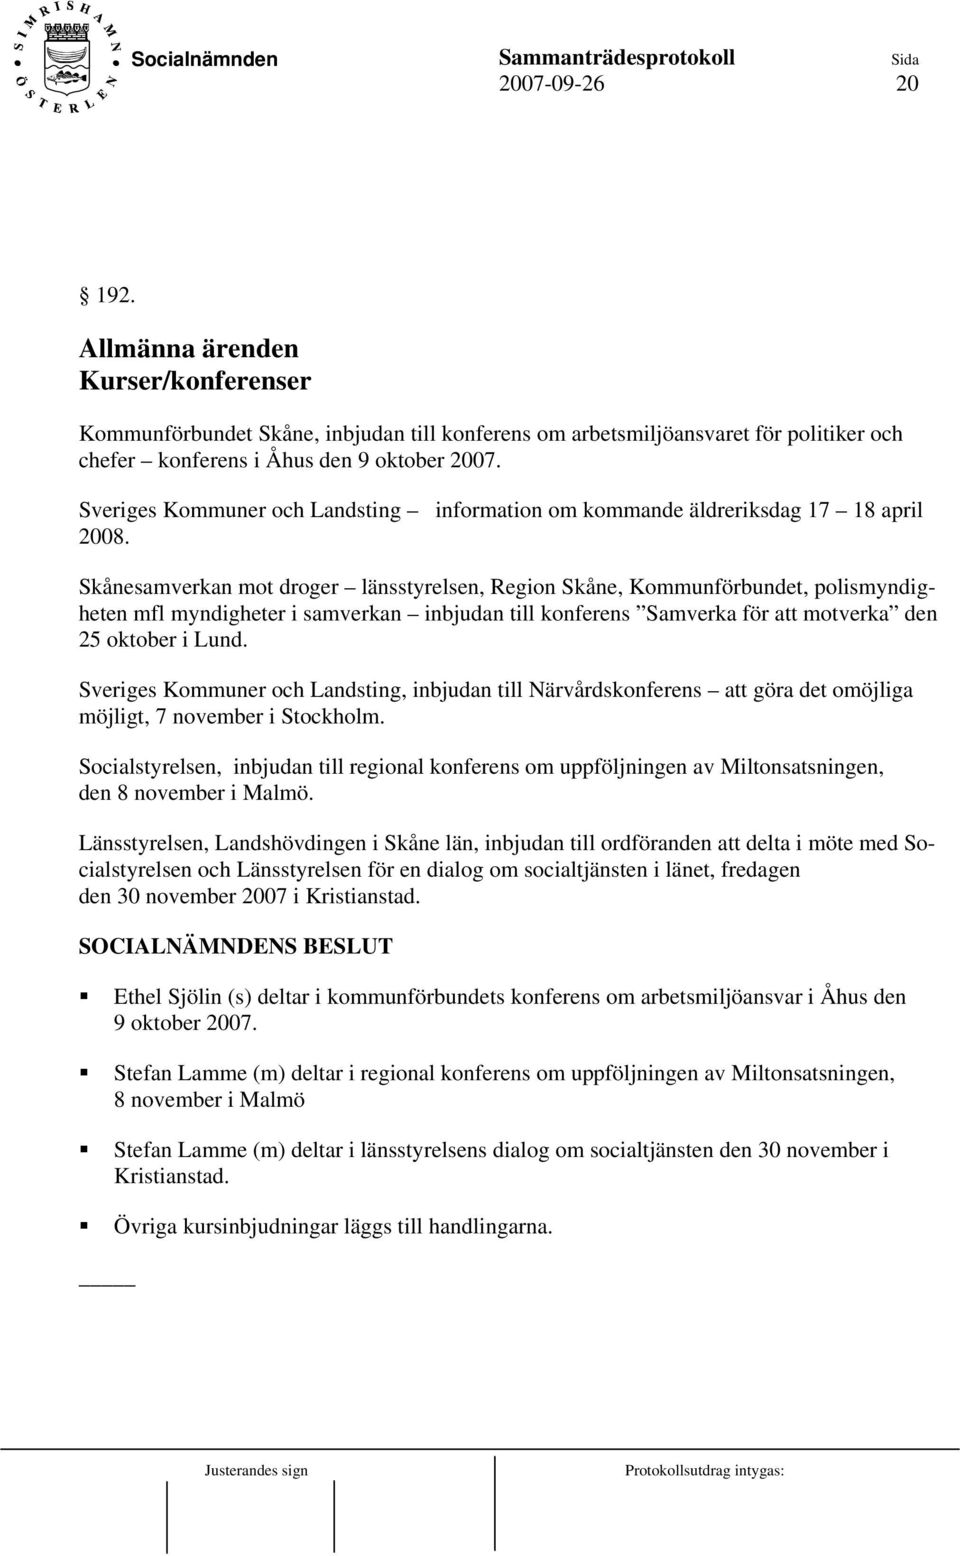 Skånesamverkan mot droger länsstyrelsen, Region Skåne, Kommunförbundet, polismyndigheten mfl myndigheter i samverkan inbjudan till konferens Samverka för att motverka den 25 oktober i Lund.